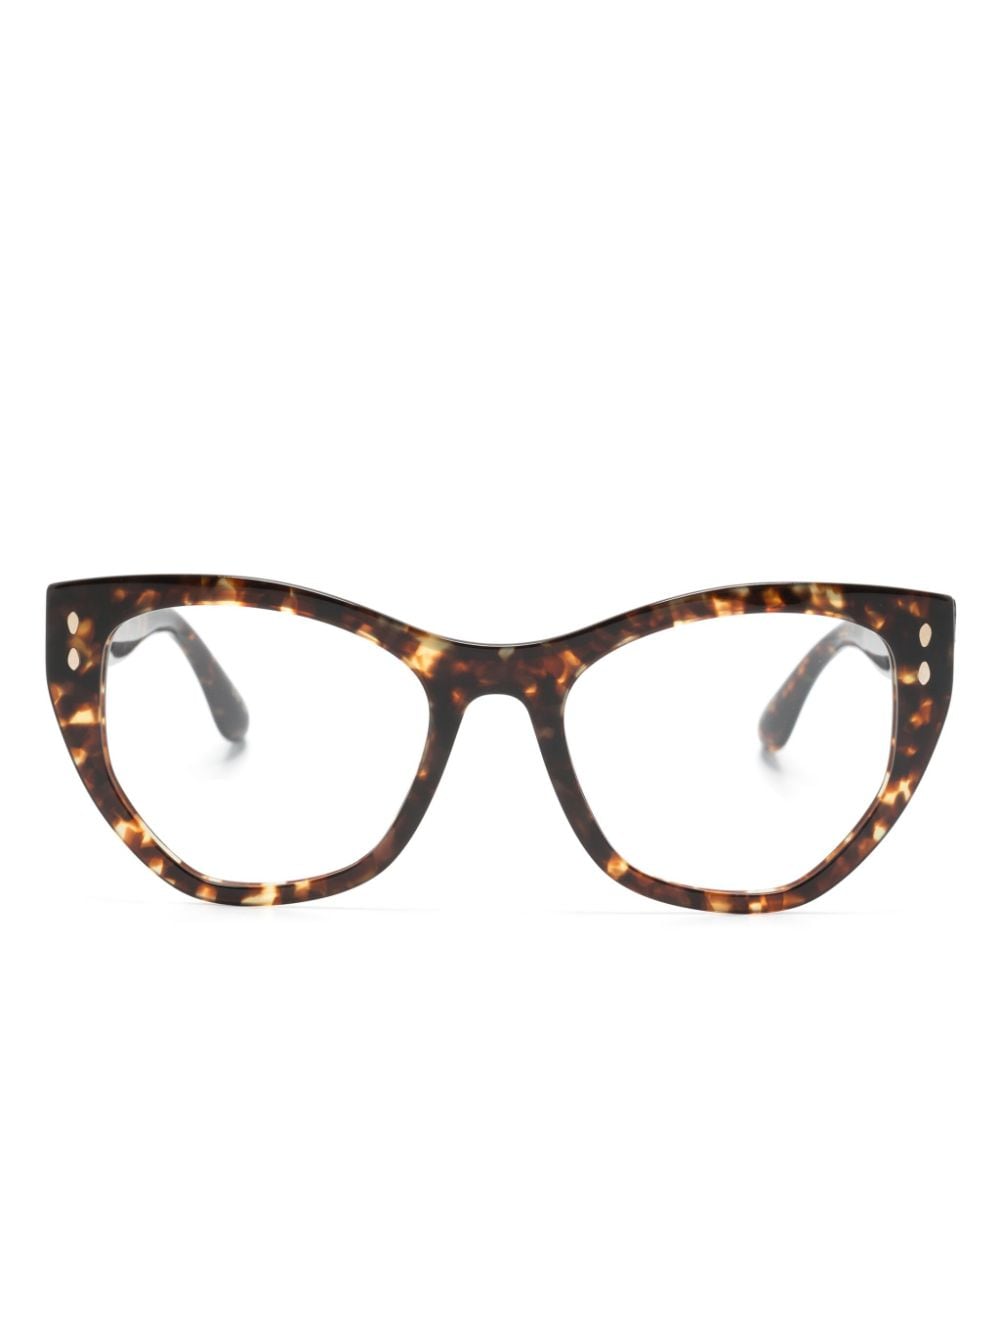 Isabel Marant Eyewear Tortoiseshell Butterfly-frame Glasses In Black